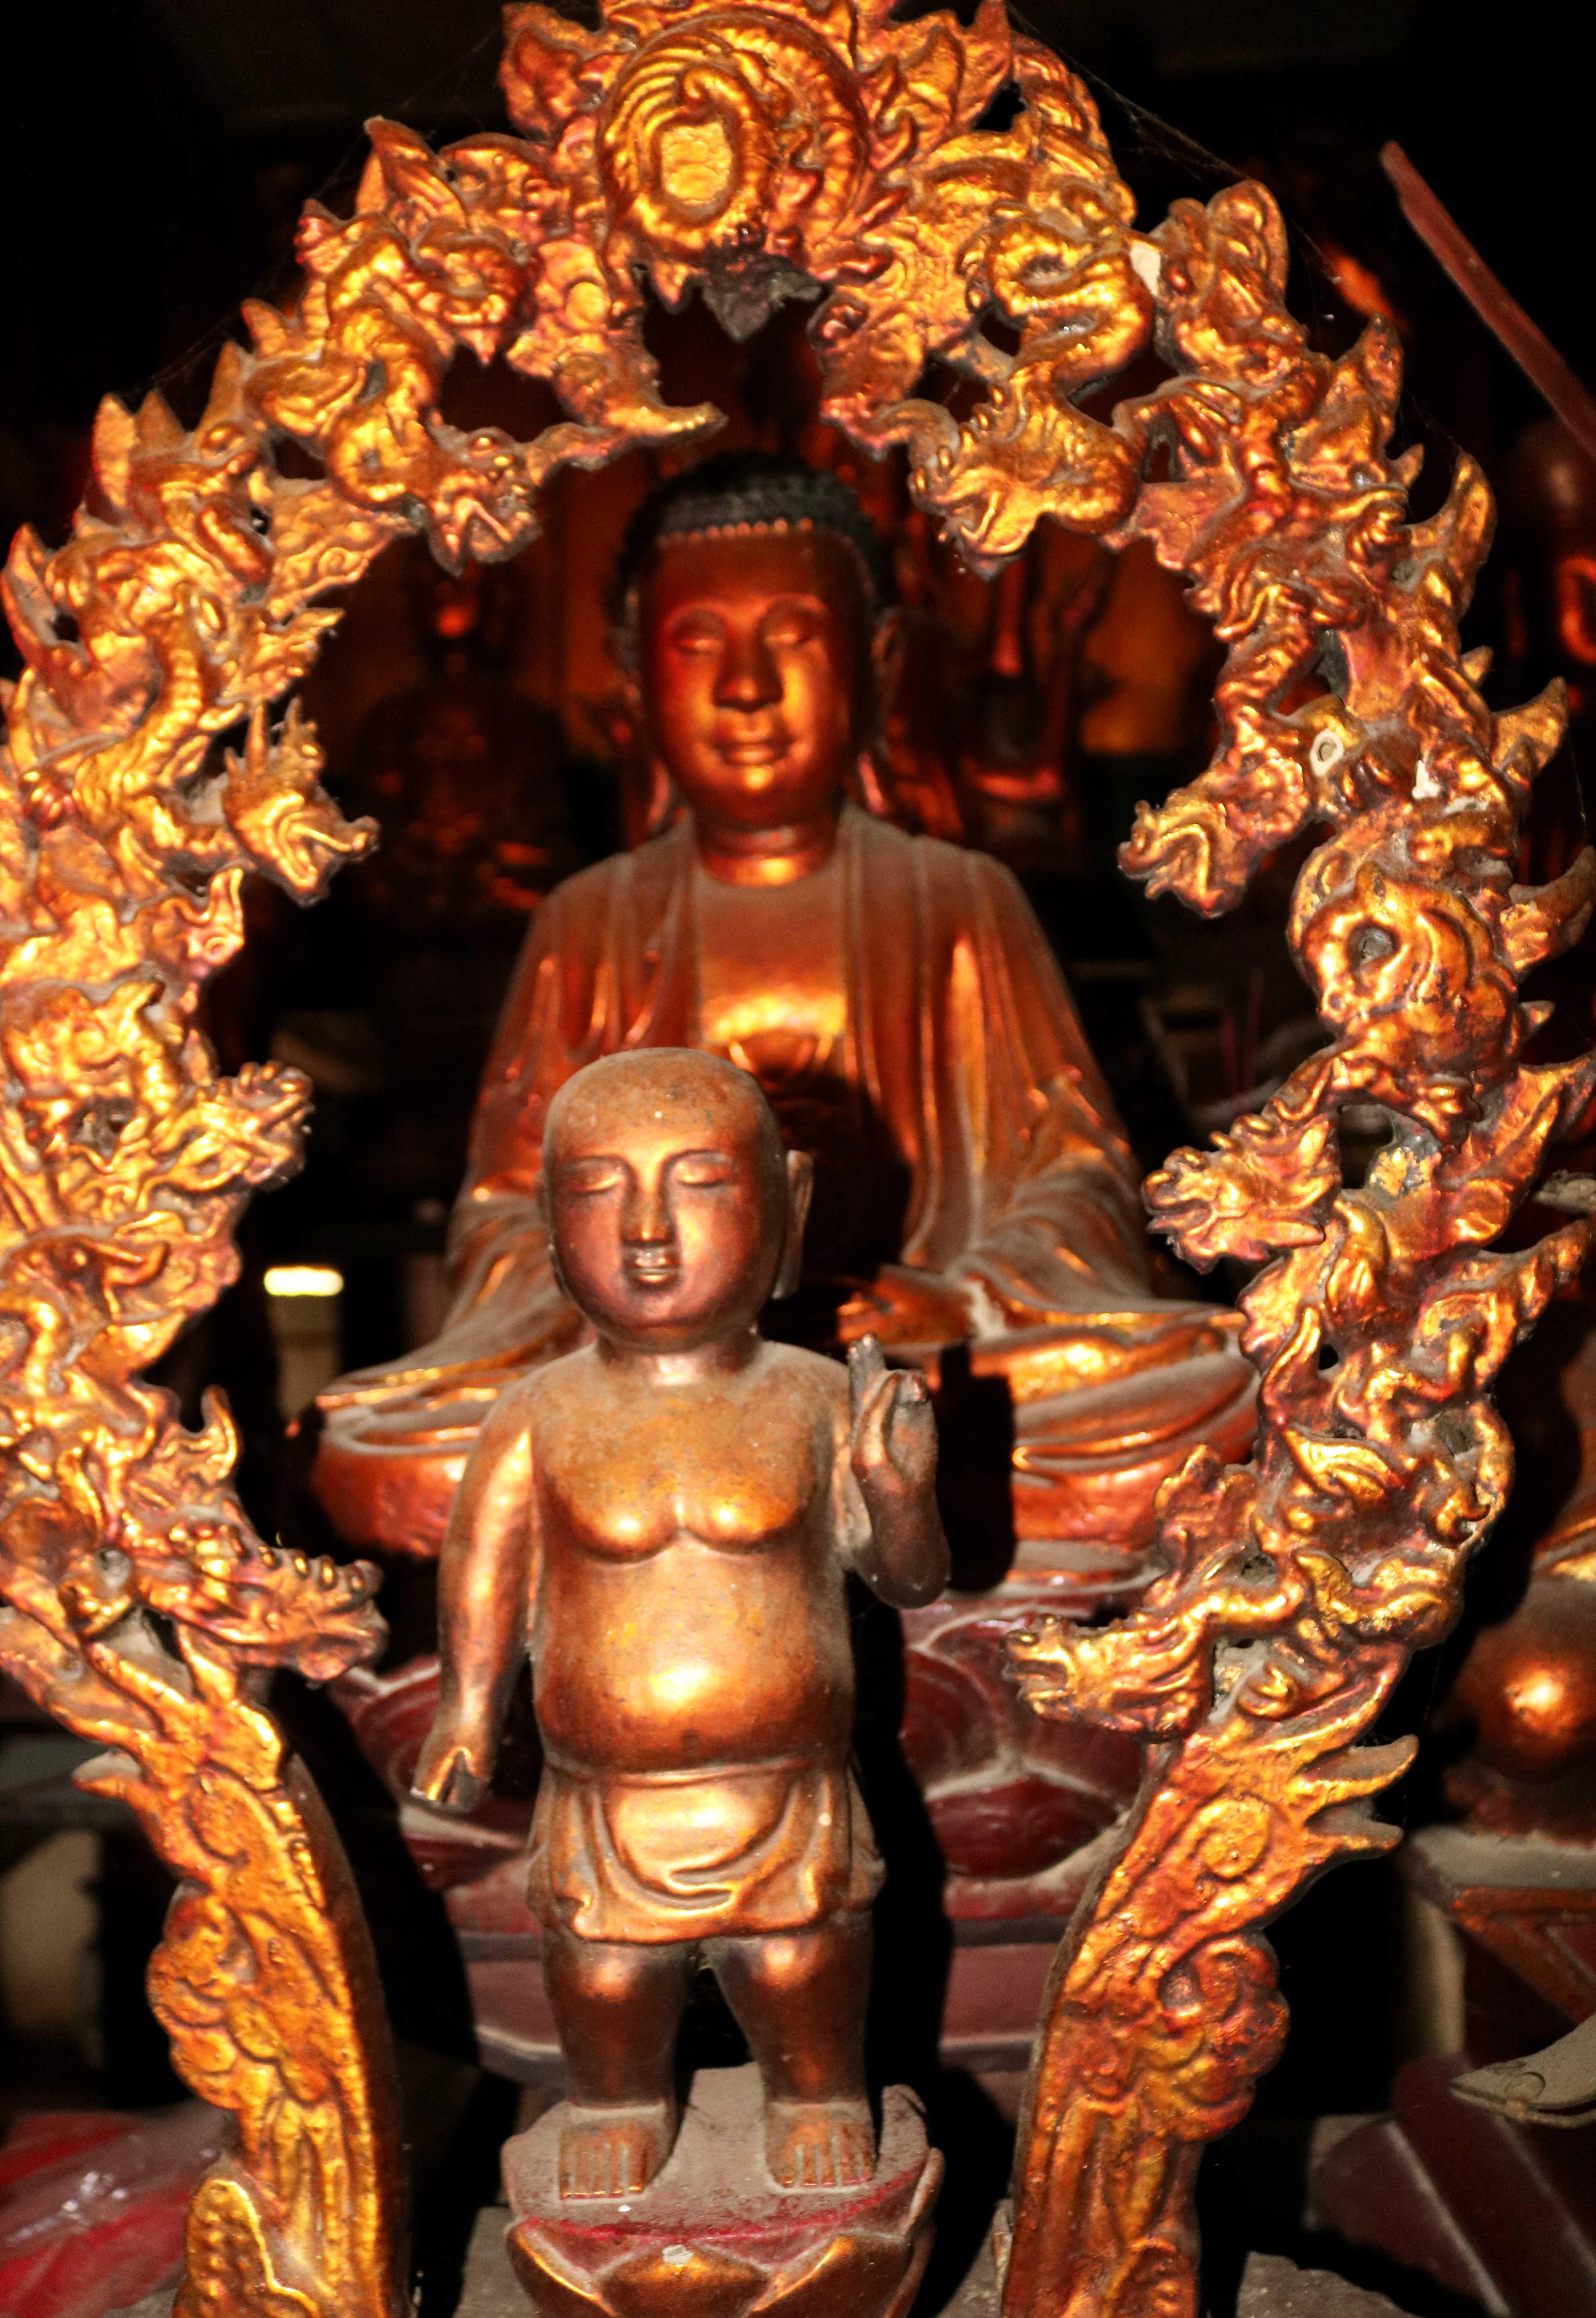 Cũng trên bàn thờ chính, ngay trước pho Pho tượng Phật bà Quan âm 12 tay là pho tượng Phật sơ sinh đứng trên đài sen bao quanh là vòng cửu long. Đây cũng được cho là một pho tượng cổ đẹp, độc đáo của chùa.